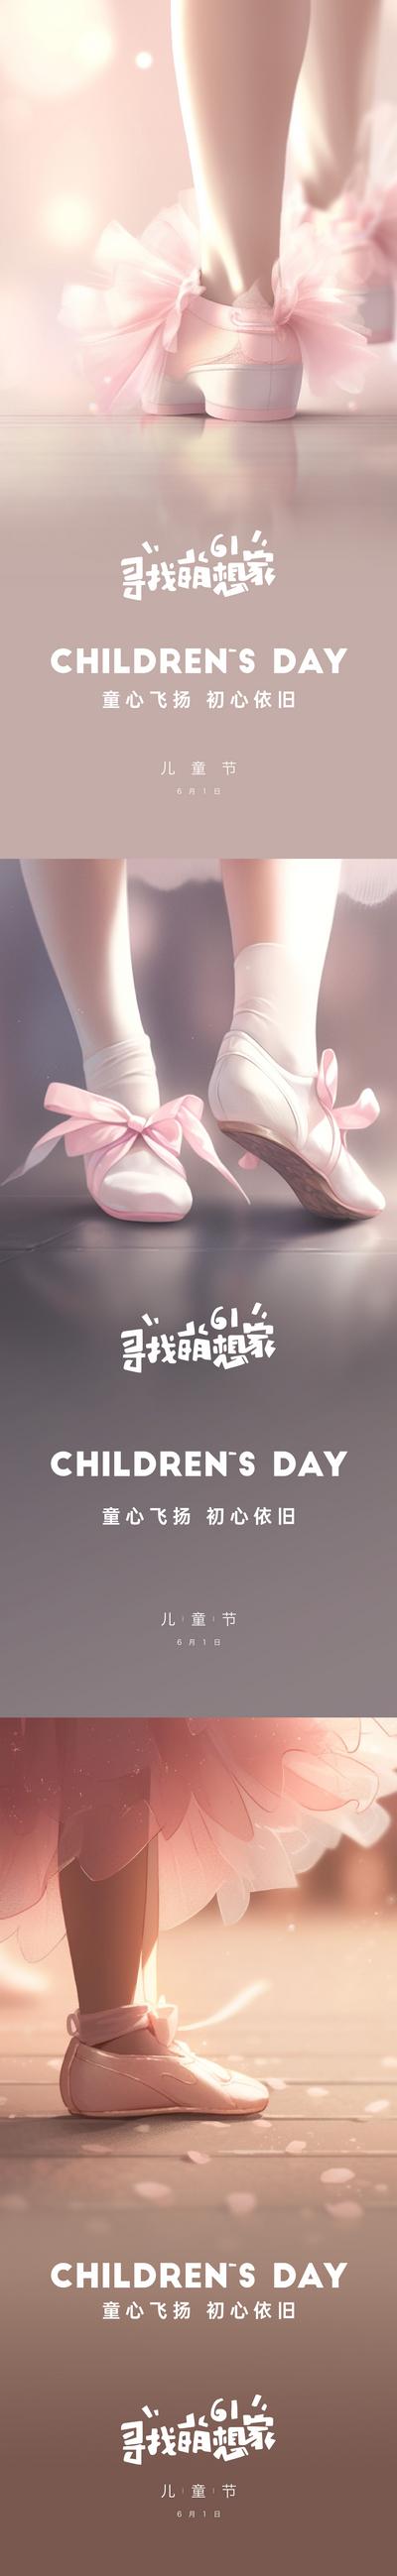 南门网 海报 公历节日 儿童节 梦幻 舞蹈 跳舞 温馨 芭蕾 系列